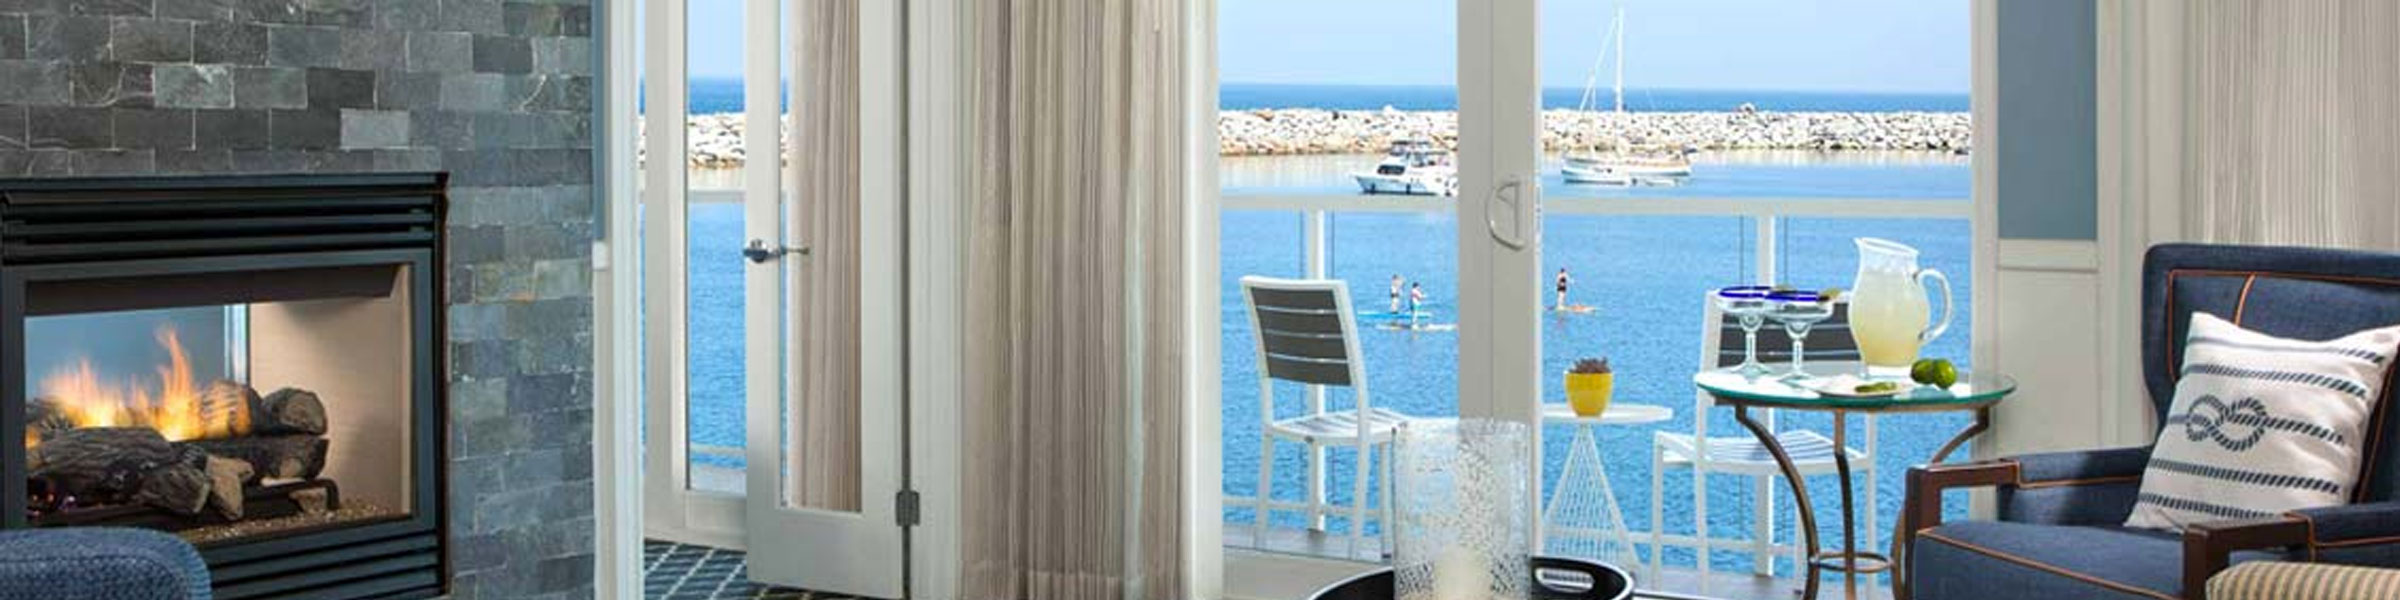 Premier King Guestroom with ocean view